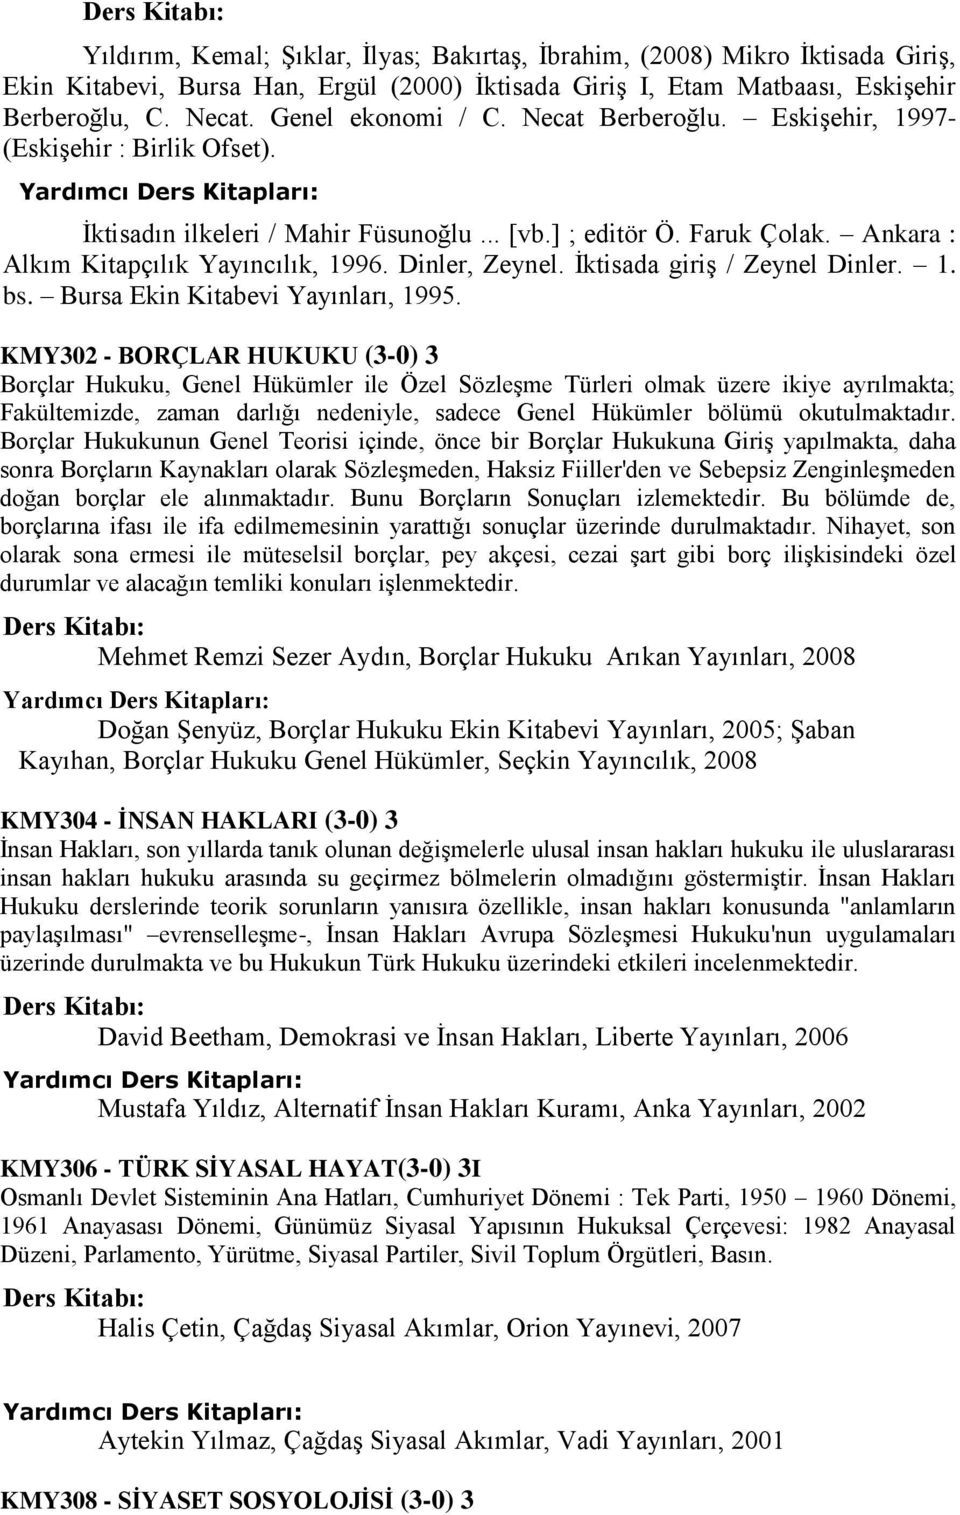 Dinler, Zeynel. İktisada giriş / Zeynel Dinler. 1. bs. Bursa Ekin Kitabevi Yayınları, 1995.